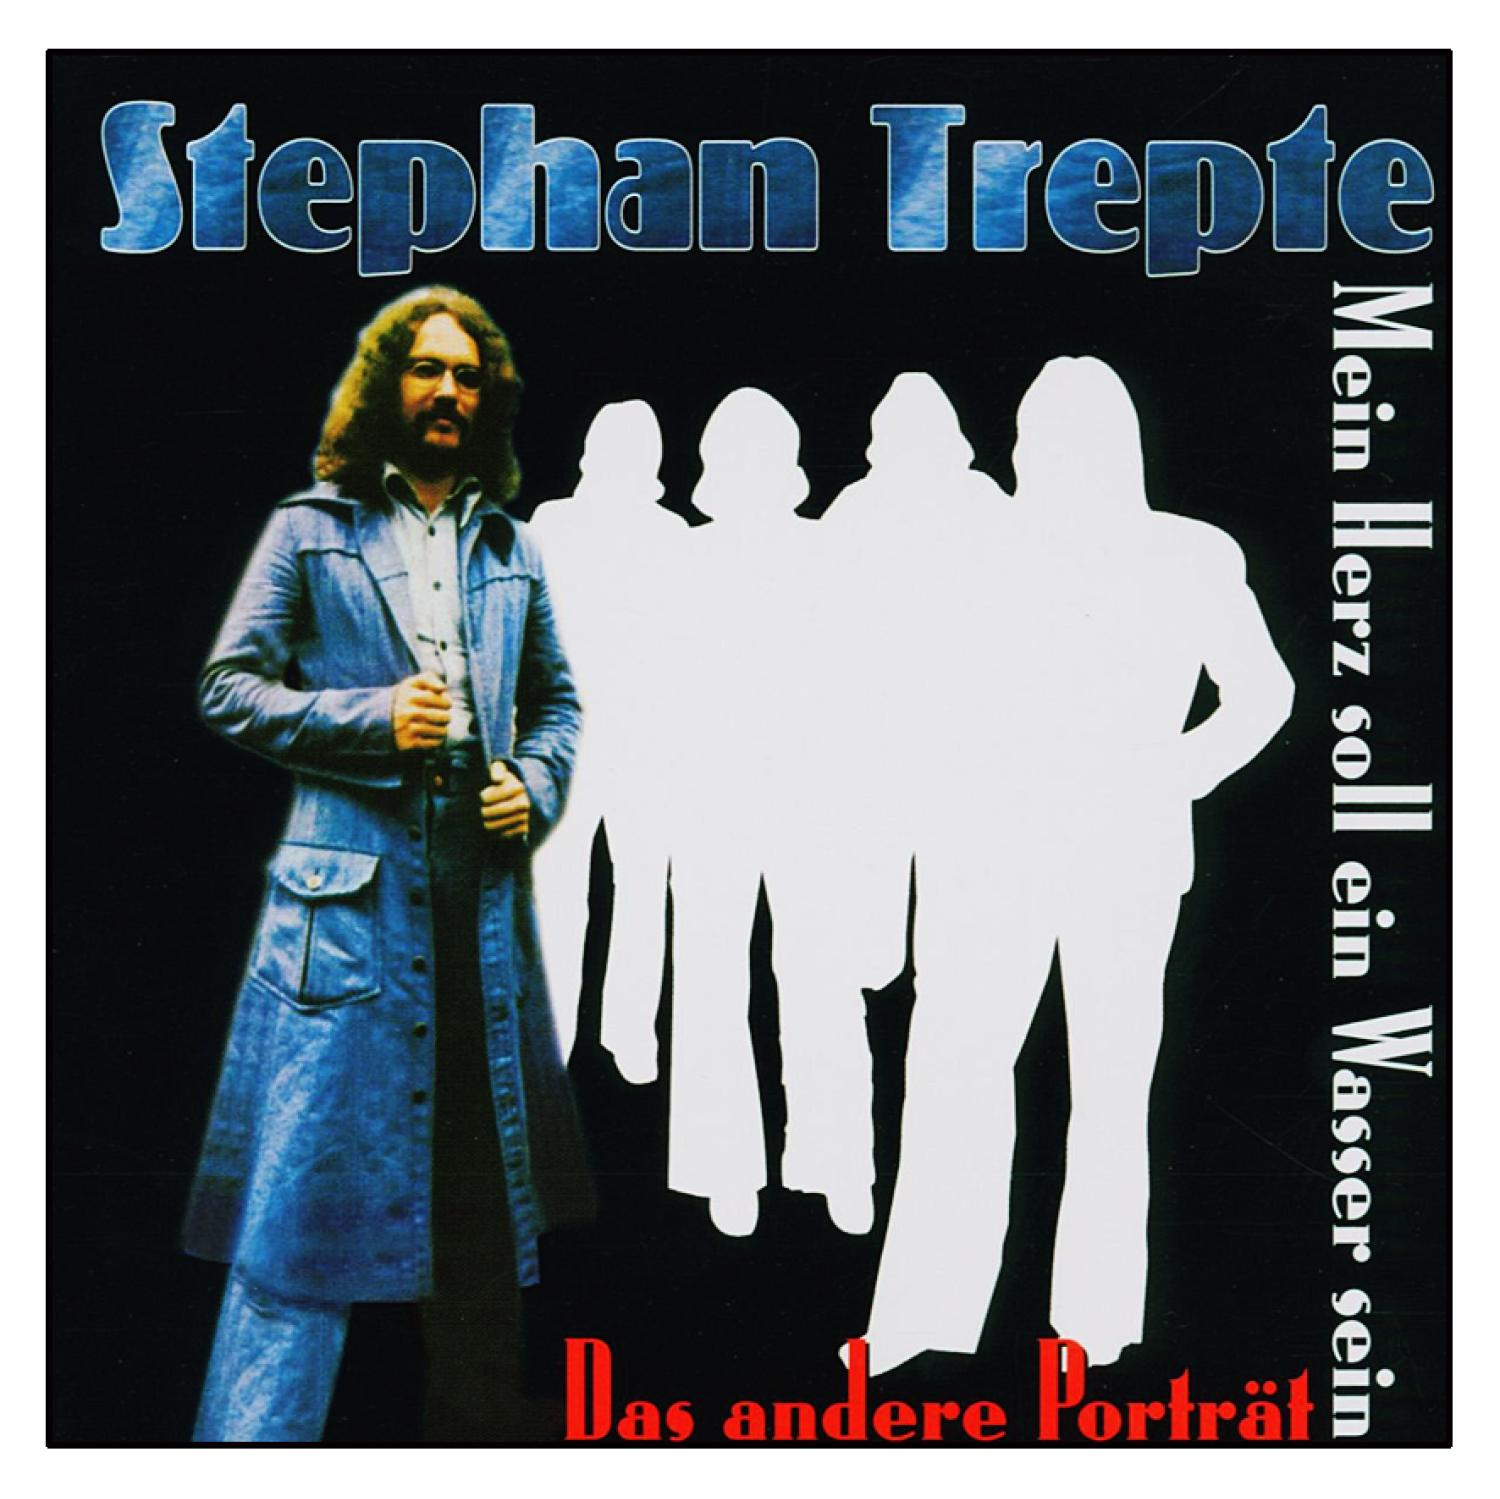 Trepte - - Ein Sein Soll Herz (CD) Wasser Stephan Mein